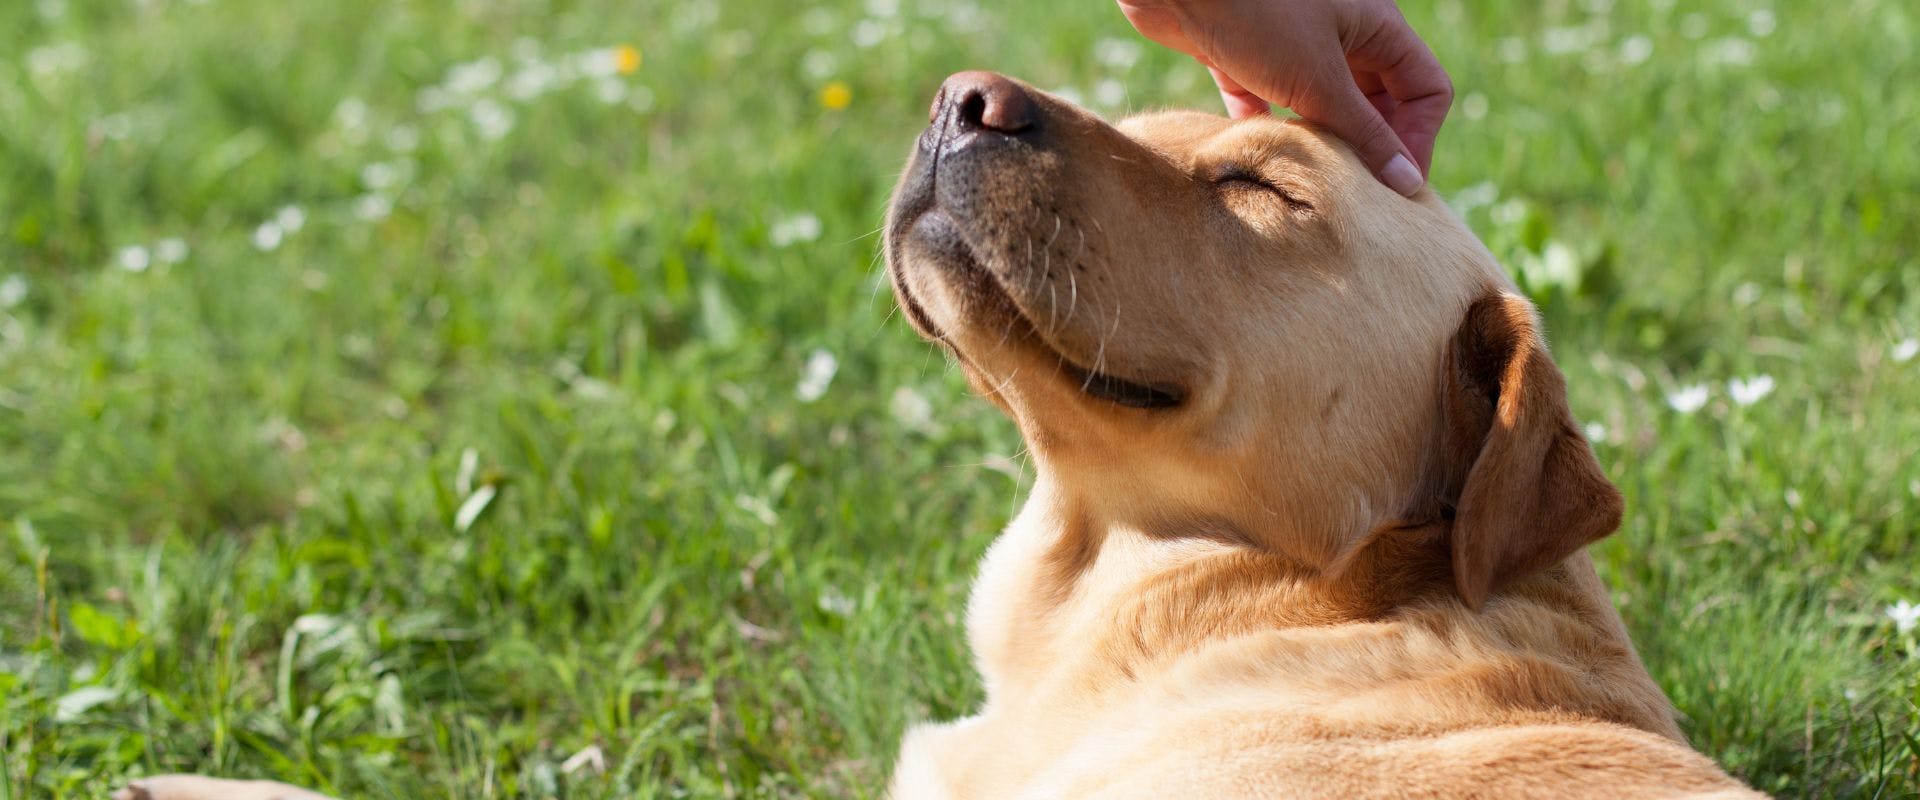 Golden Labrador having a head scratch on grass